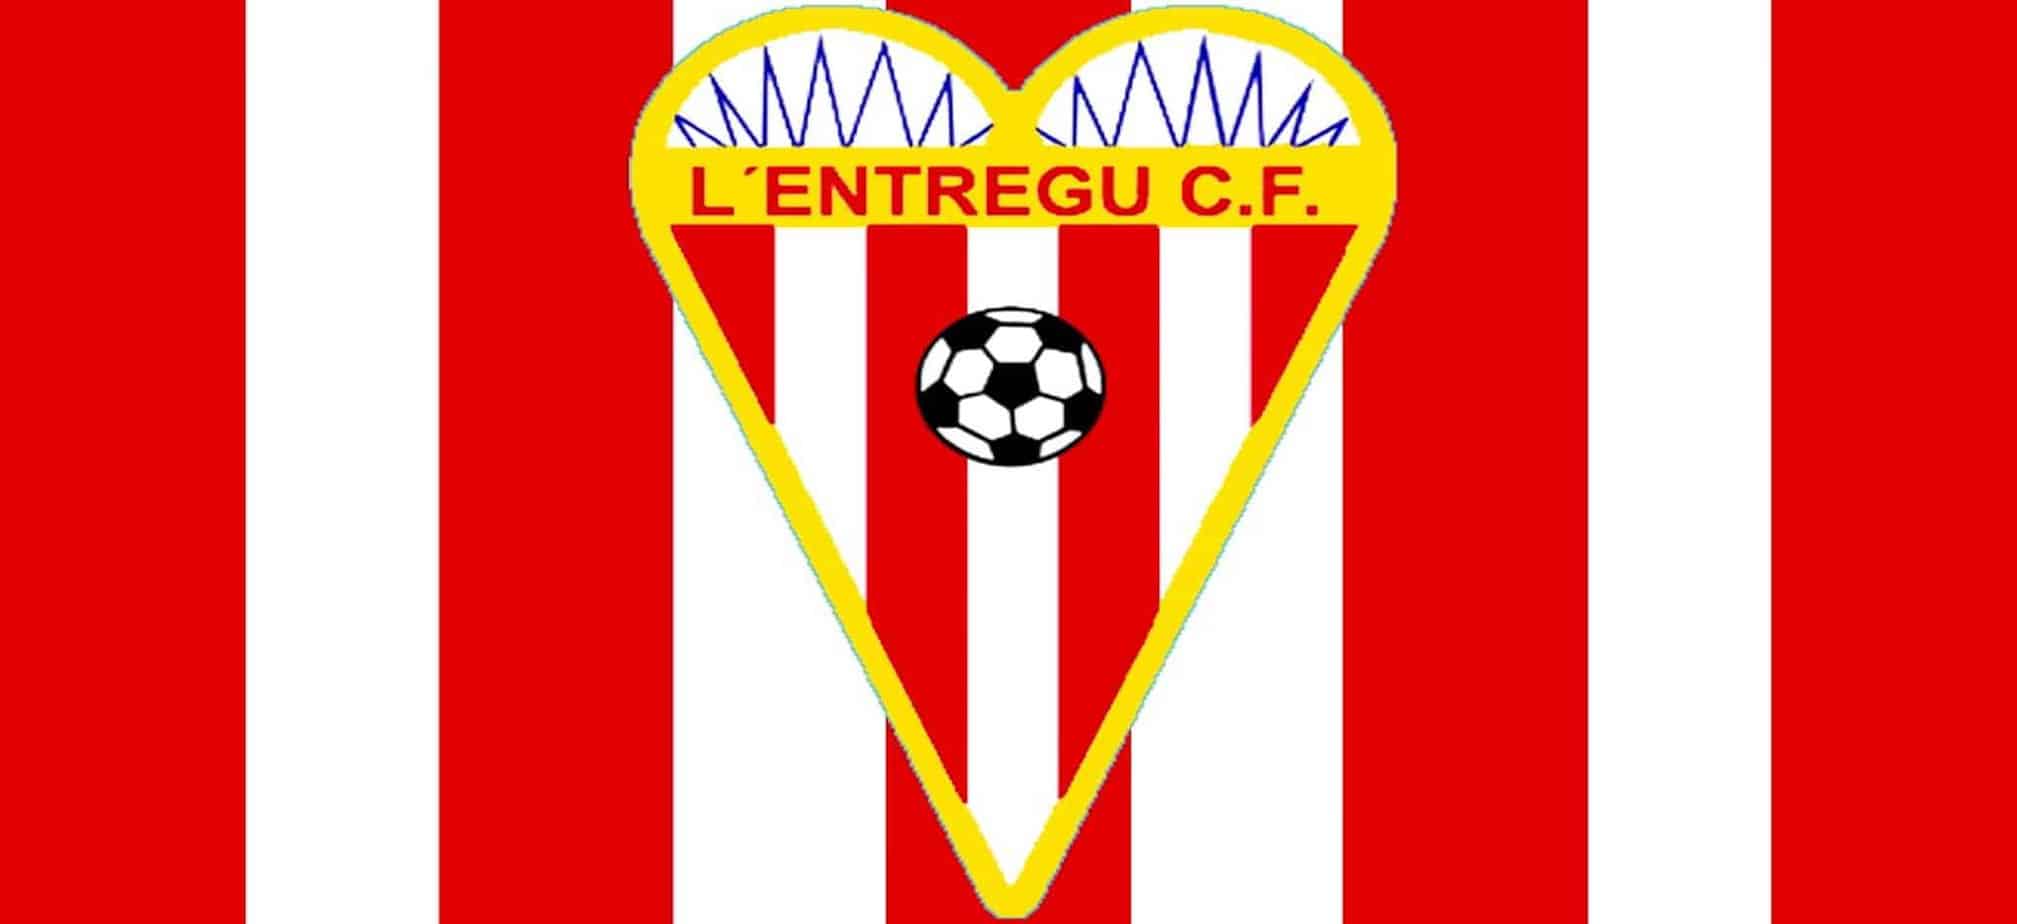 Escudo y bandera oficial L'ENTREGU C.F.